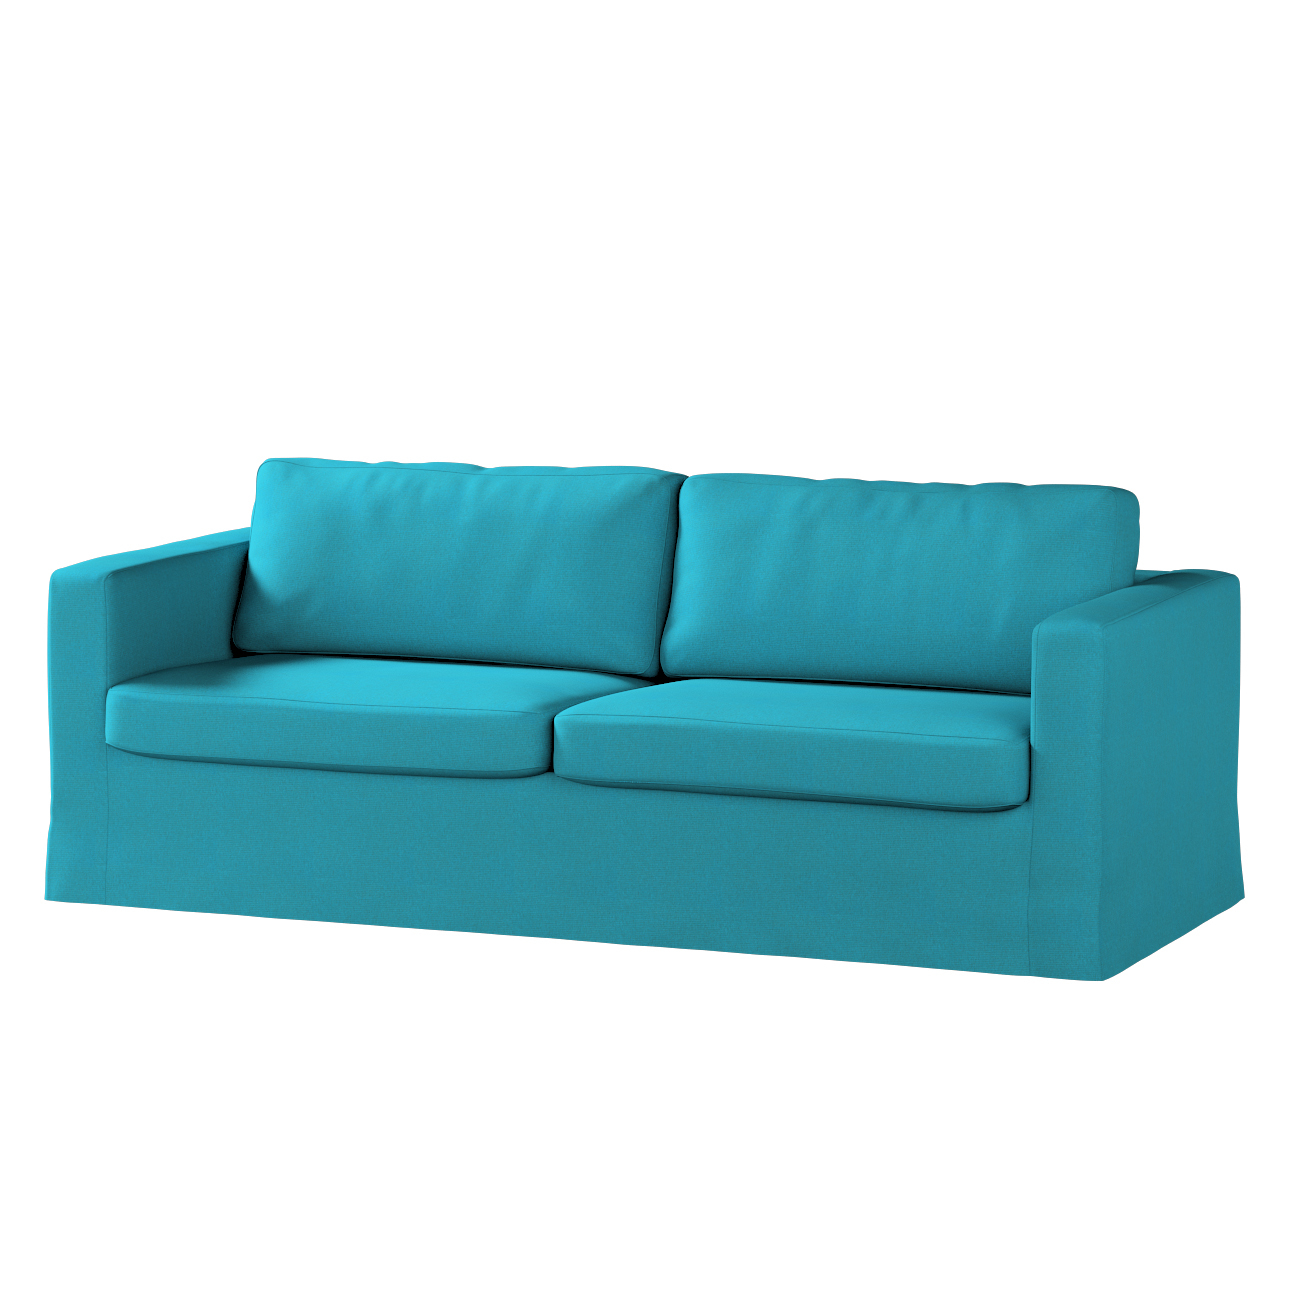 Bezug für Karlstad 3-Sitzer Sofa nicht ausklappbar, lang, türkis, Bezug für günstig online kaufen